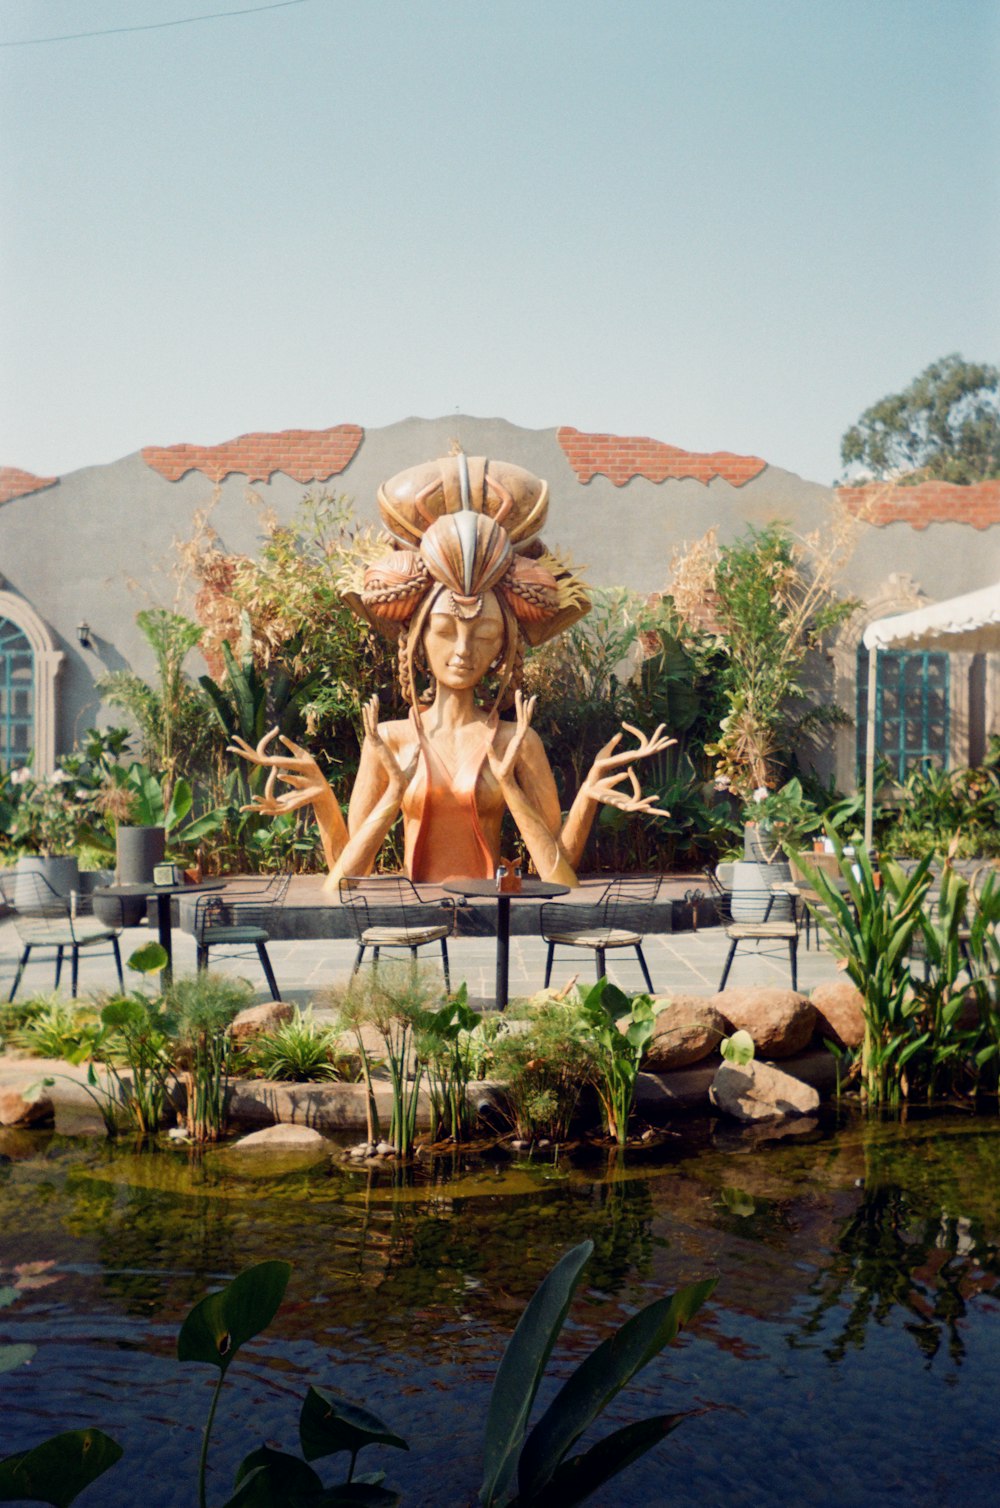 una estatua de una mujer sentada frente a un estanque